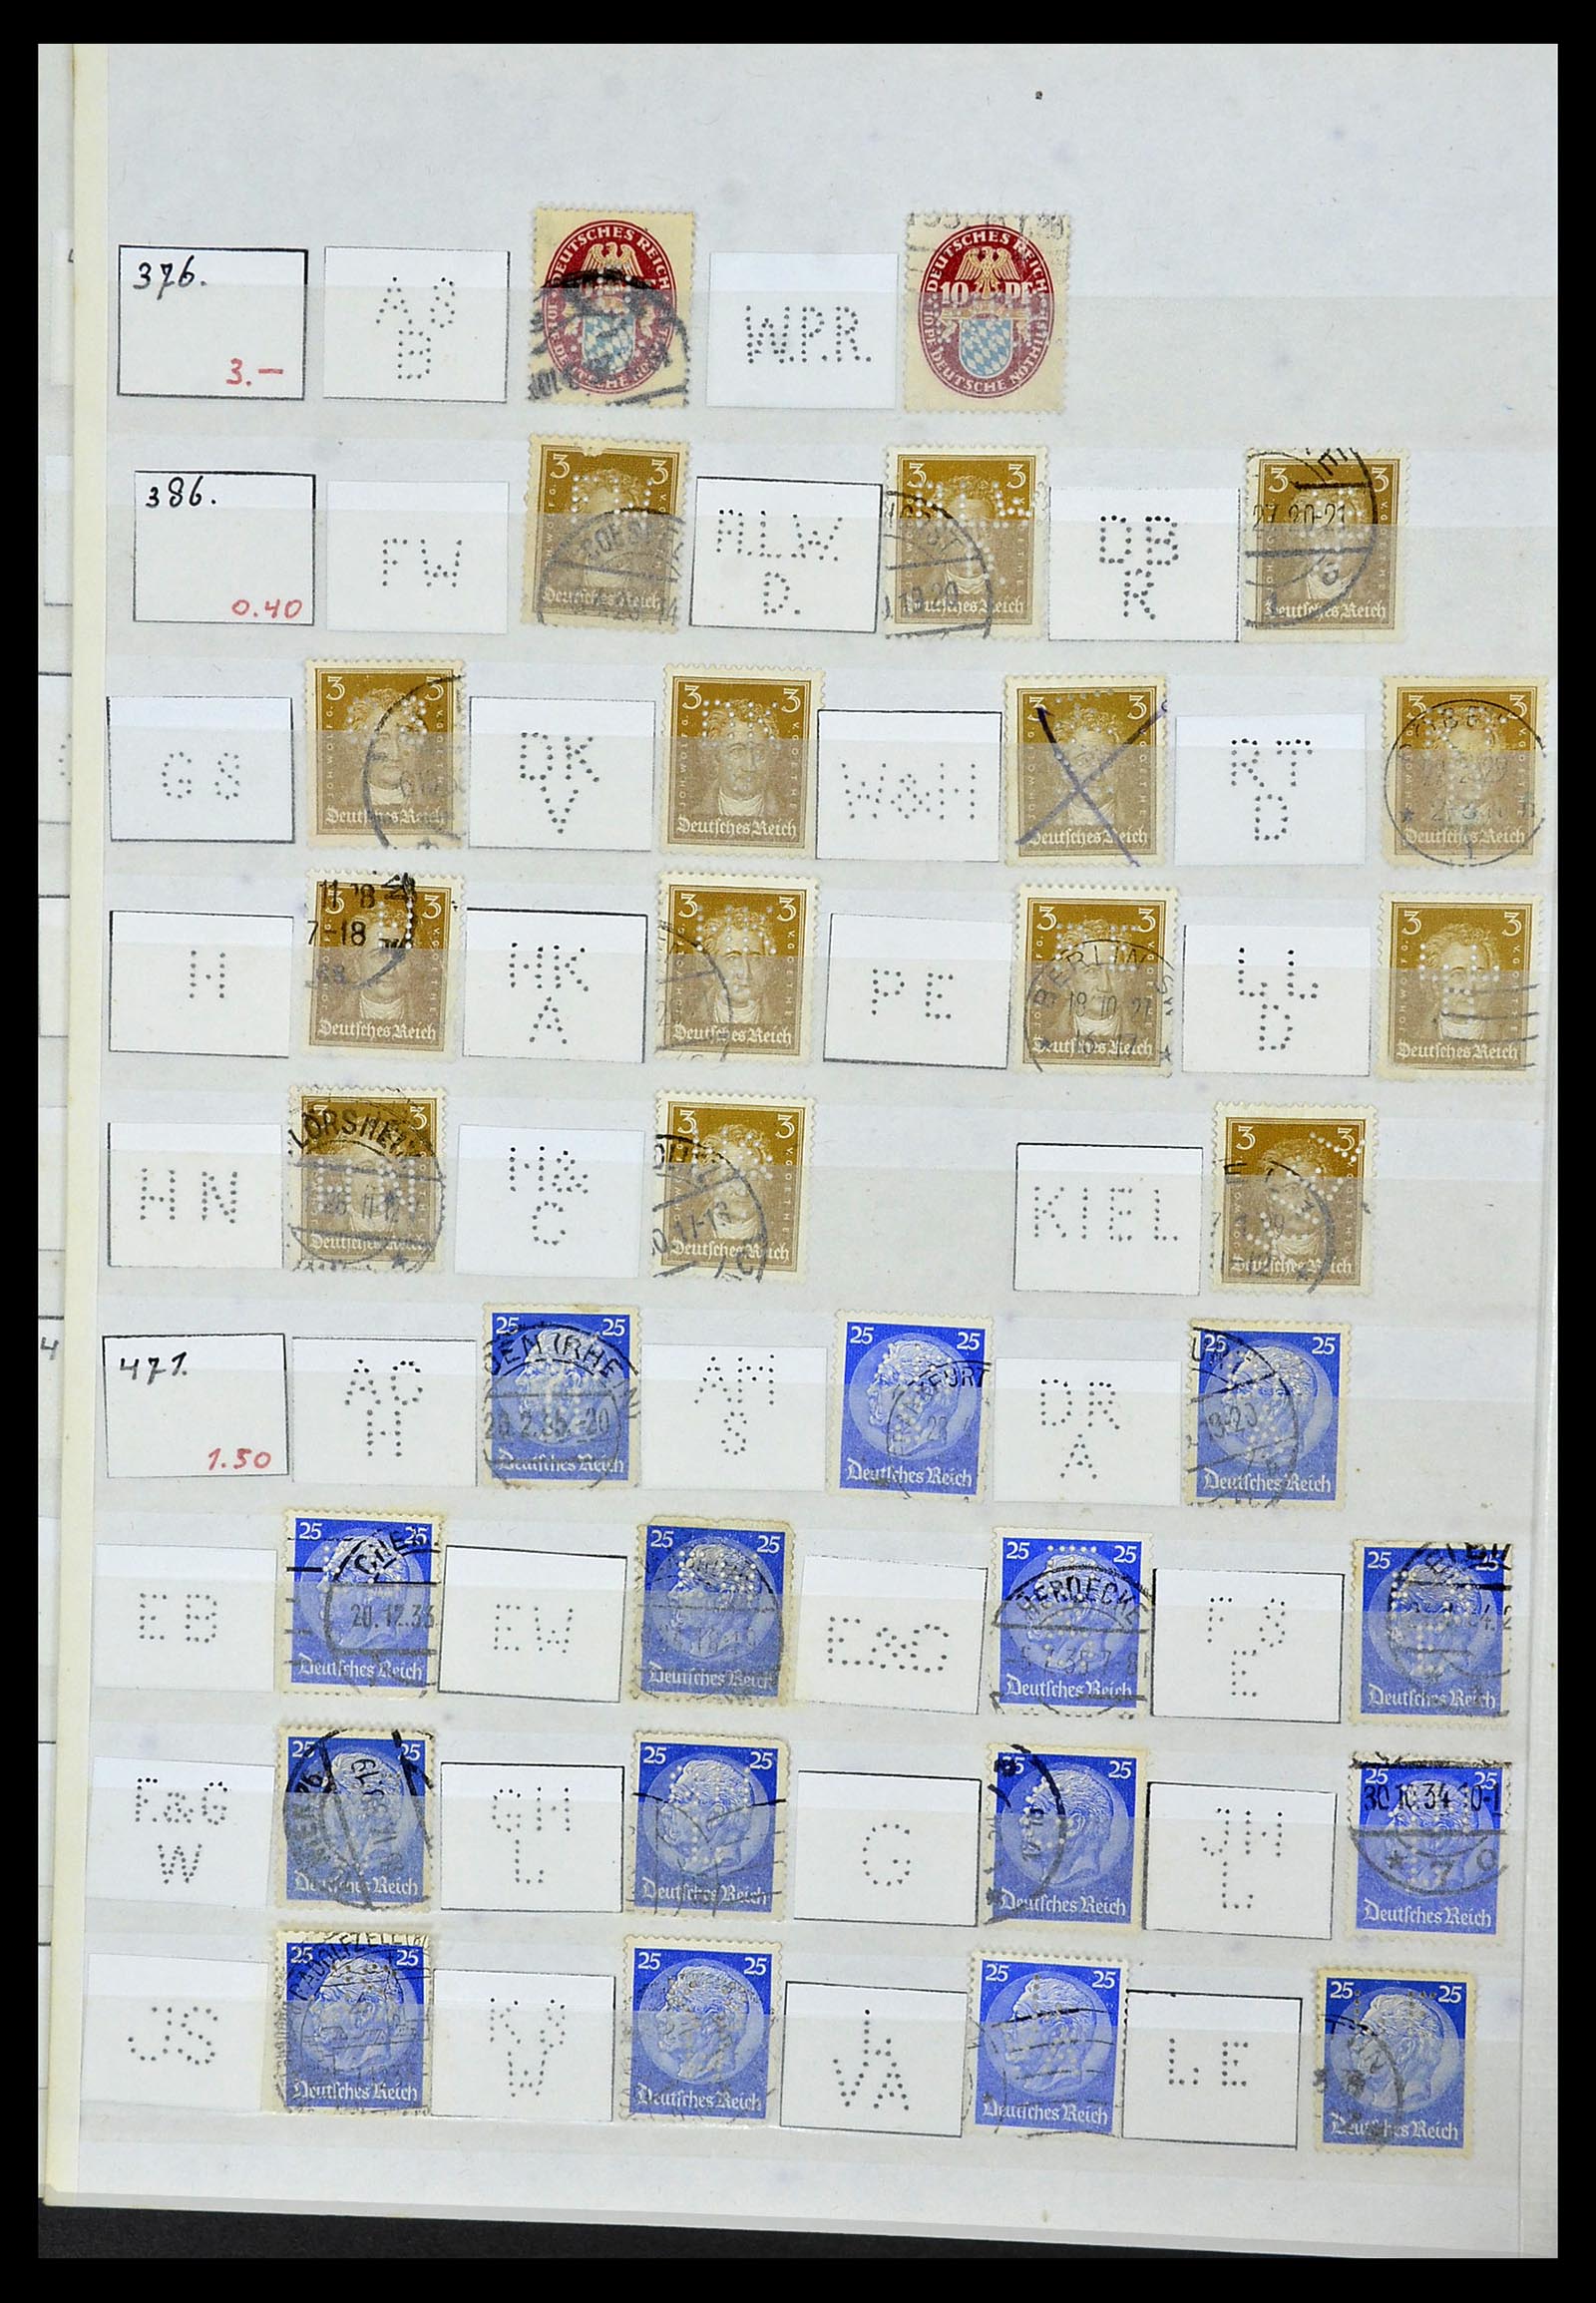 34071 054 - Stamp collection 34071 German Reich perfins 1923-1930.